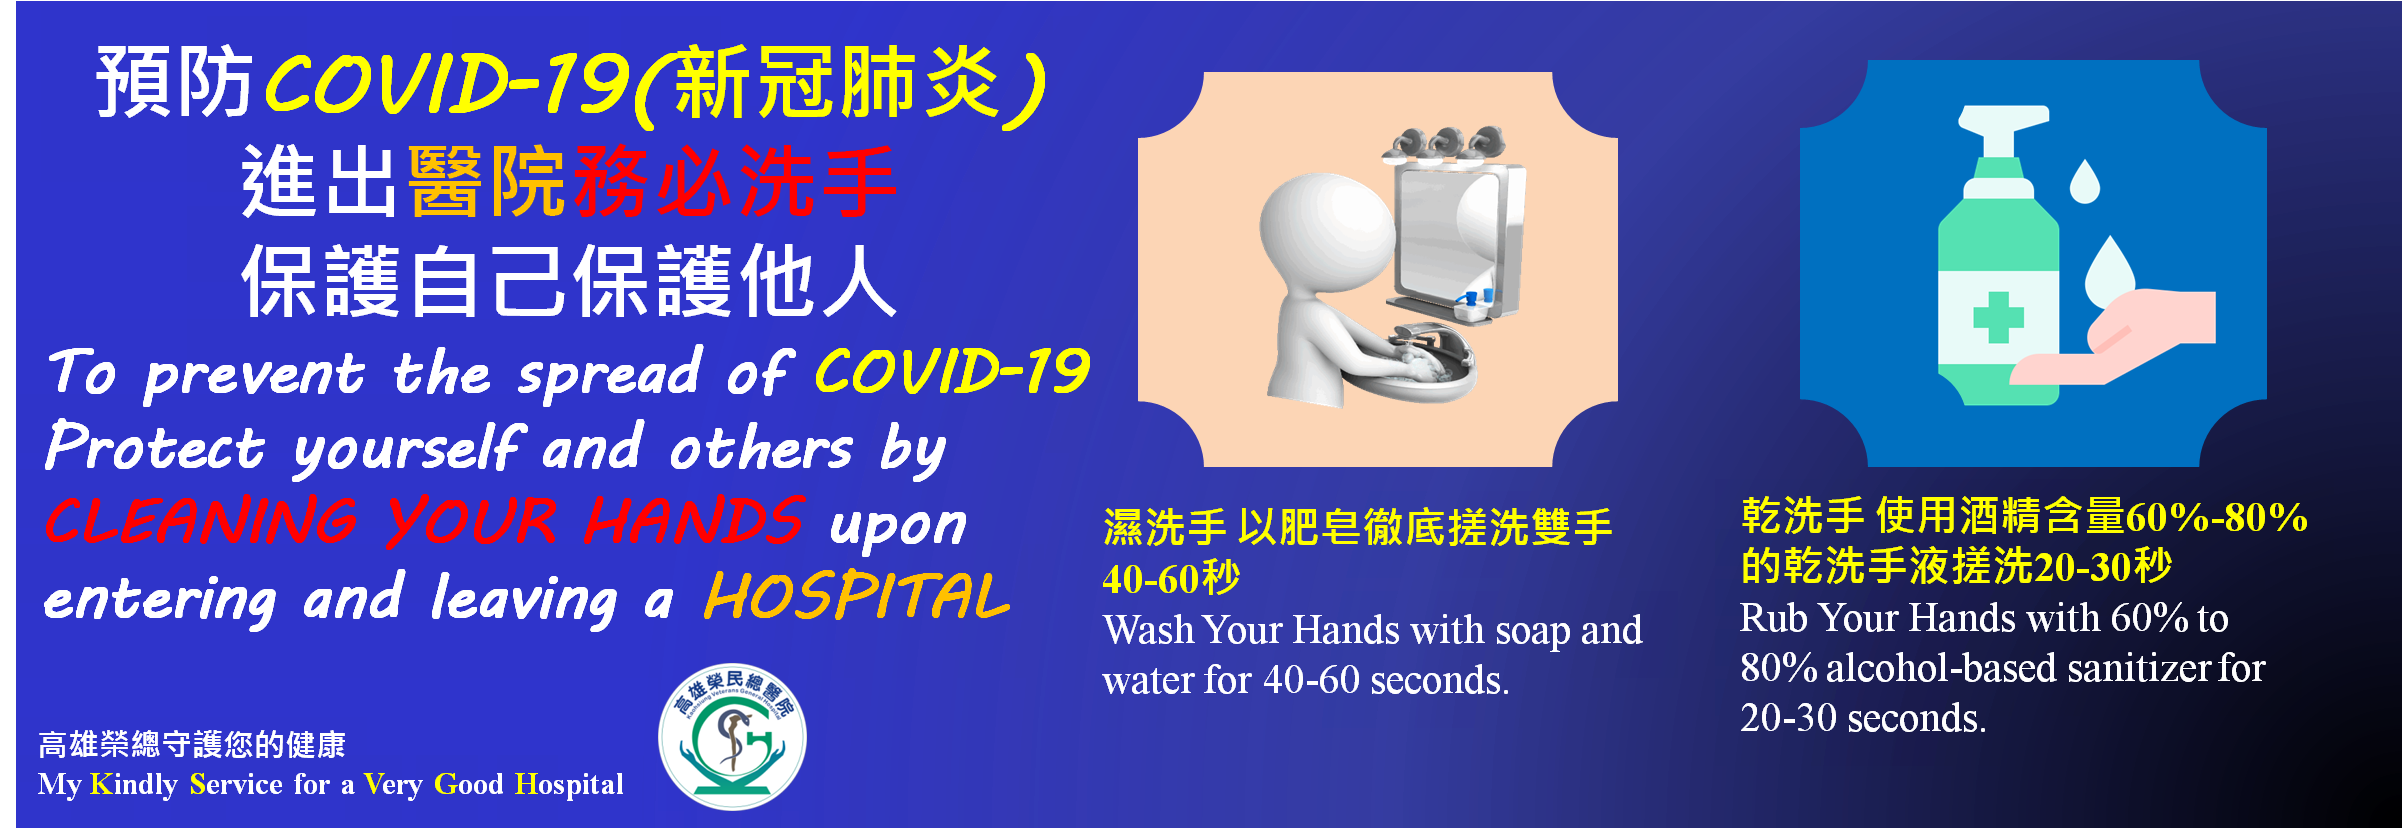 wash hand2(Image)